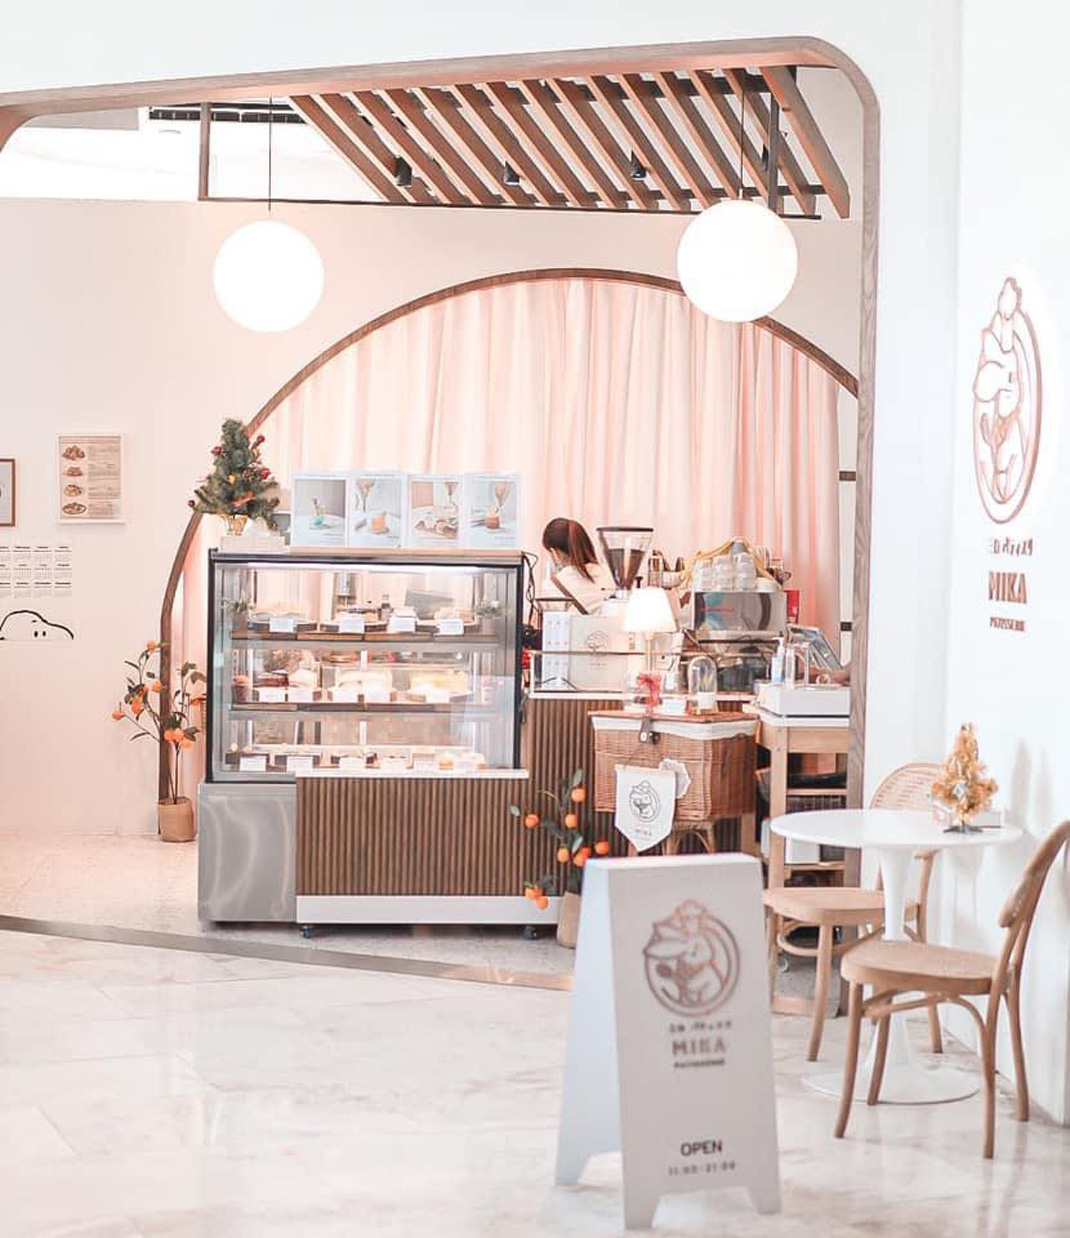 面包店Mika Patisserie 泰国 曼谷 日式甜品 面包店 插图 logo设计 vi设计 空间设计